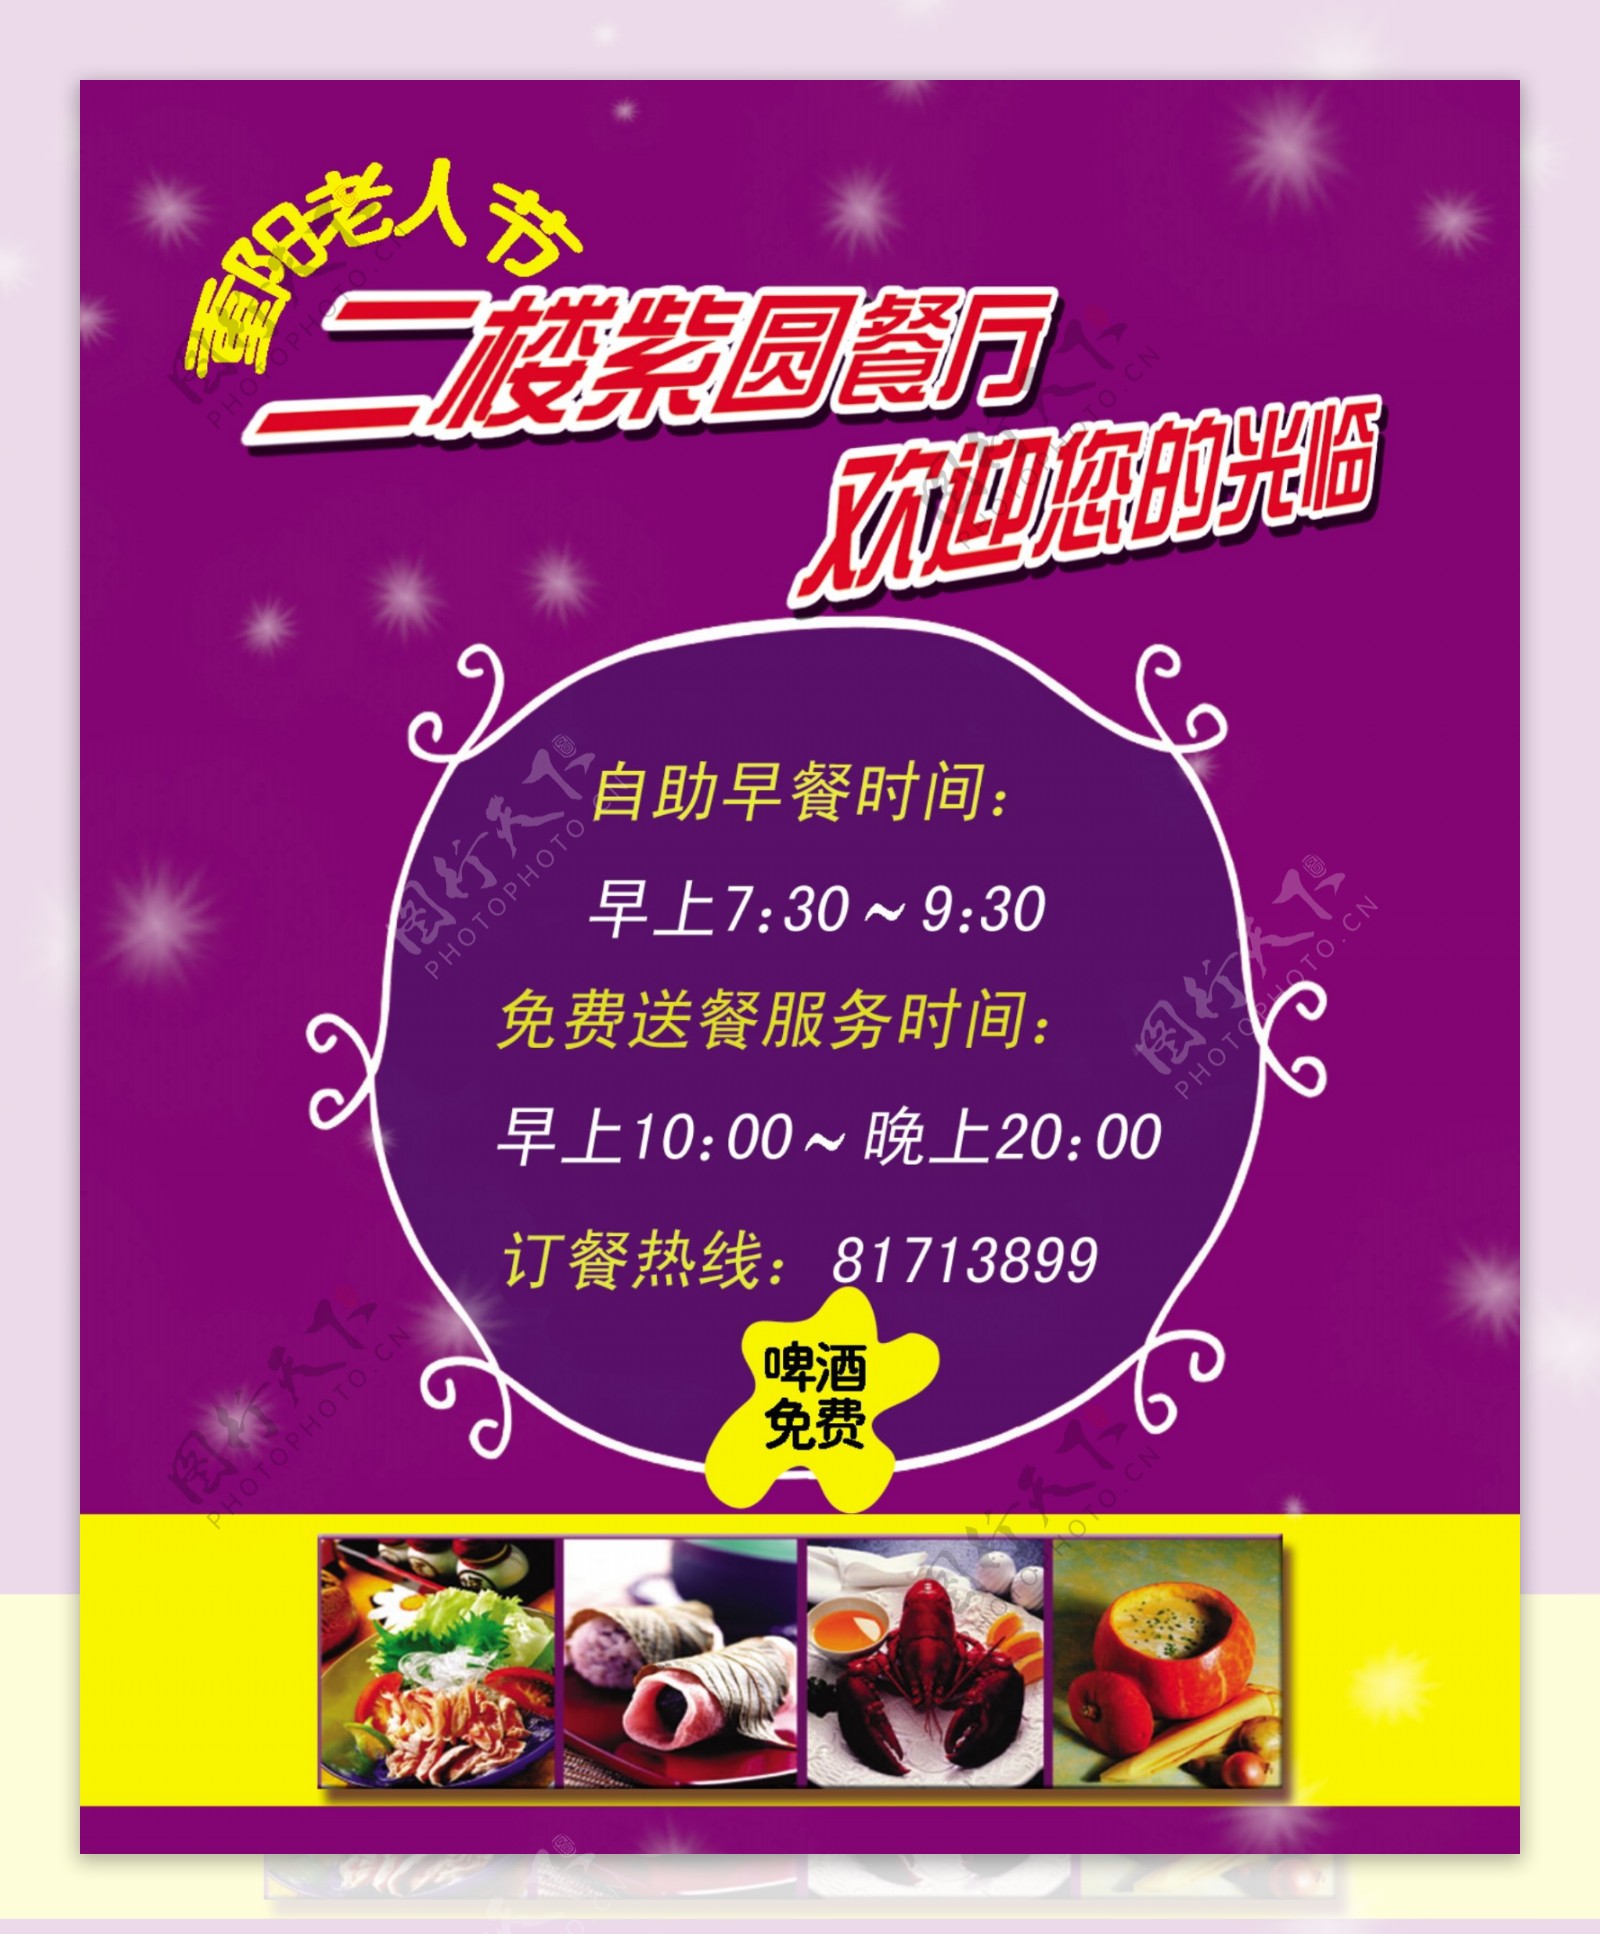 重阳节餐厅宣传海报